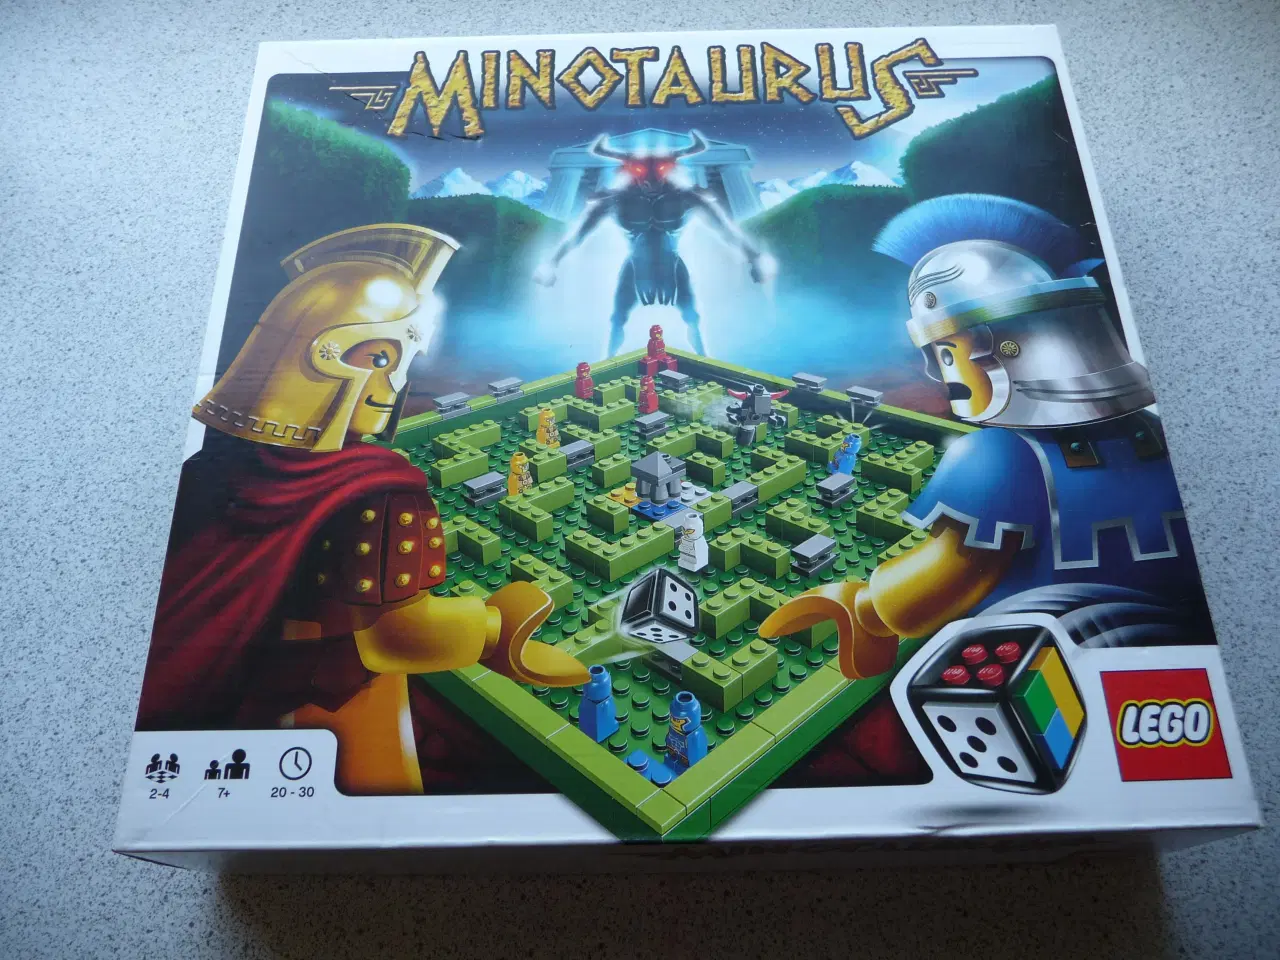 Billede 2 - lego spil komplet minotaurus 3841 - 